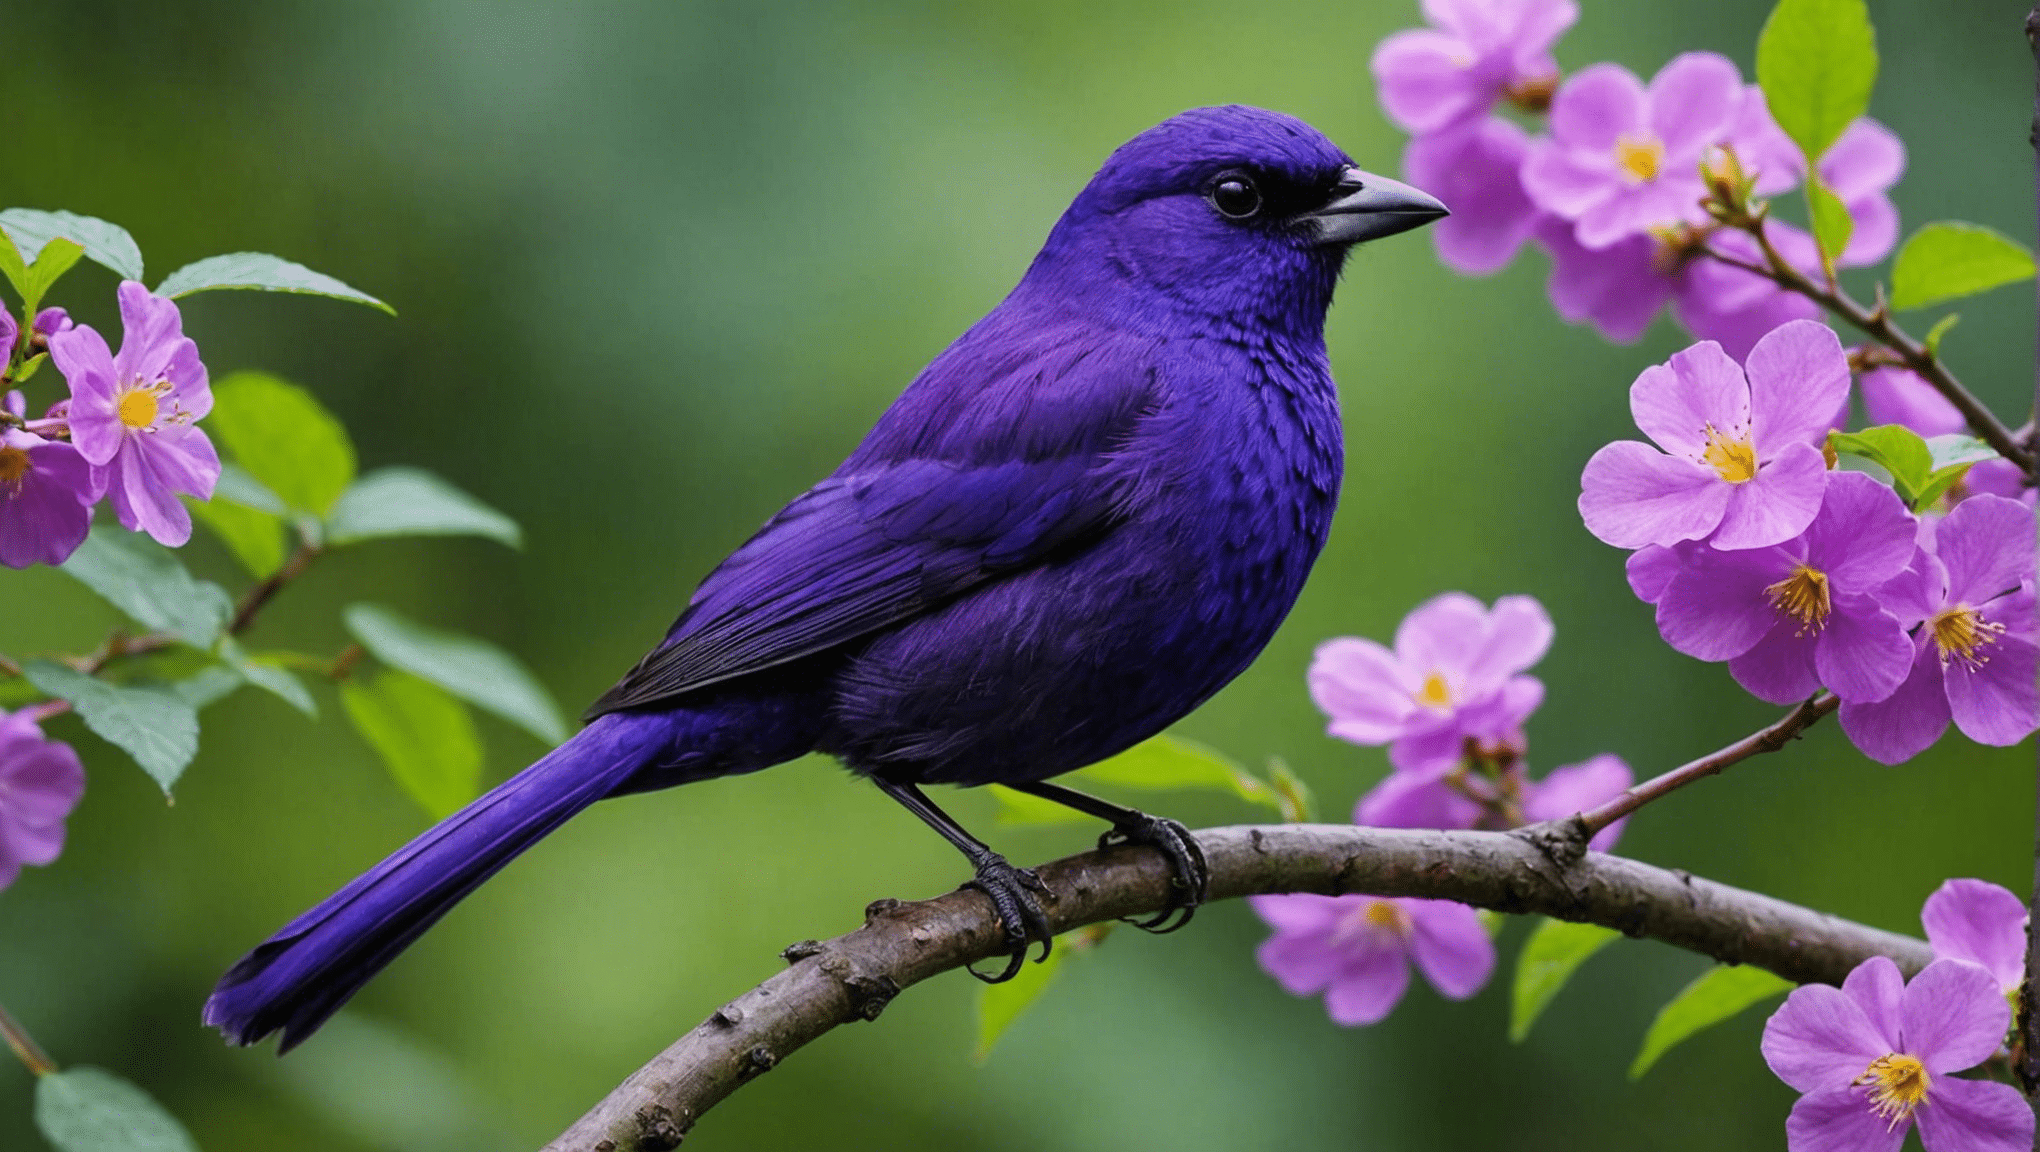 Ontdek of paarse vogels zeldzaam zijn in dit informatieve artikel over vogelsoorten en hun unieke kleuringen.